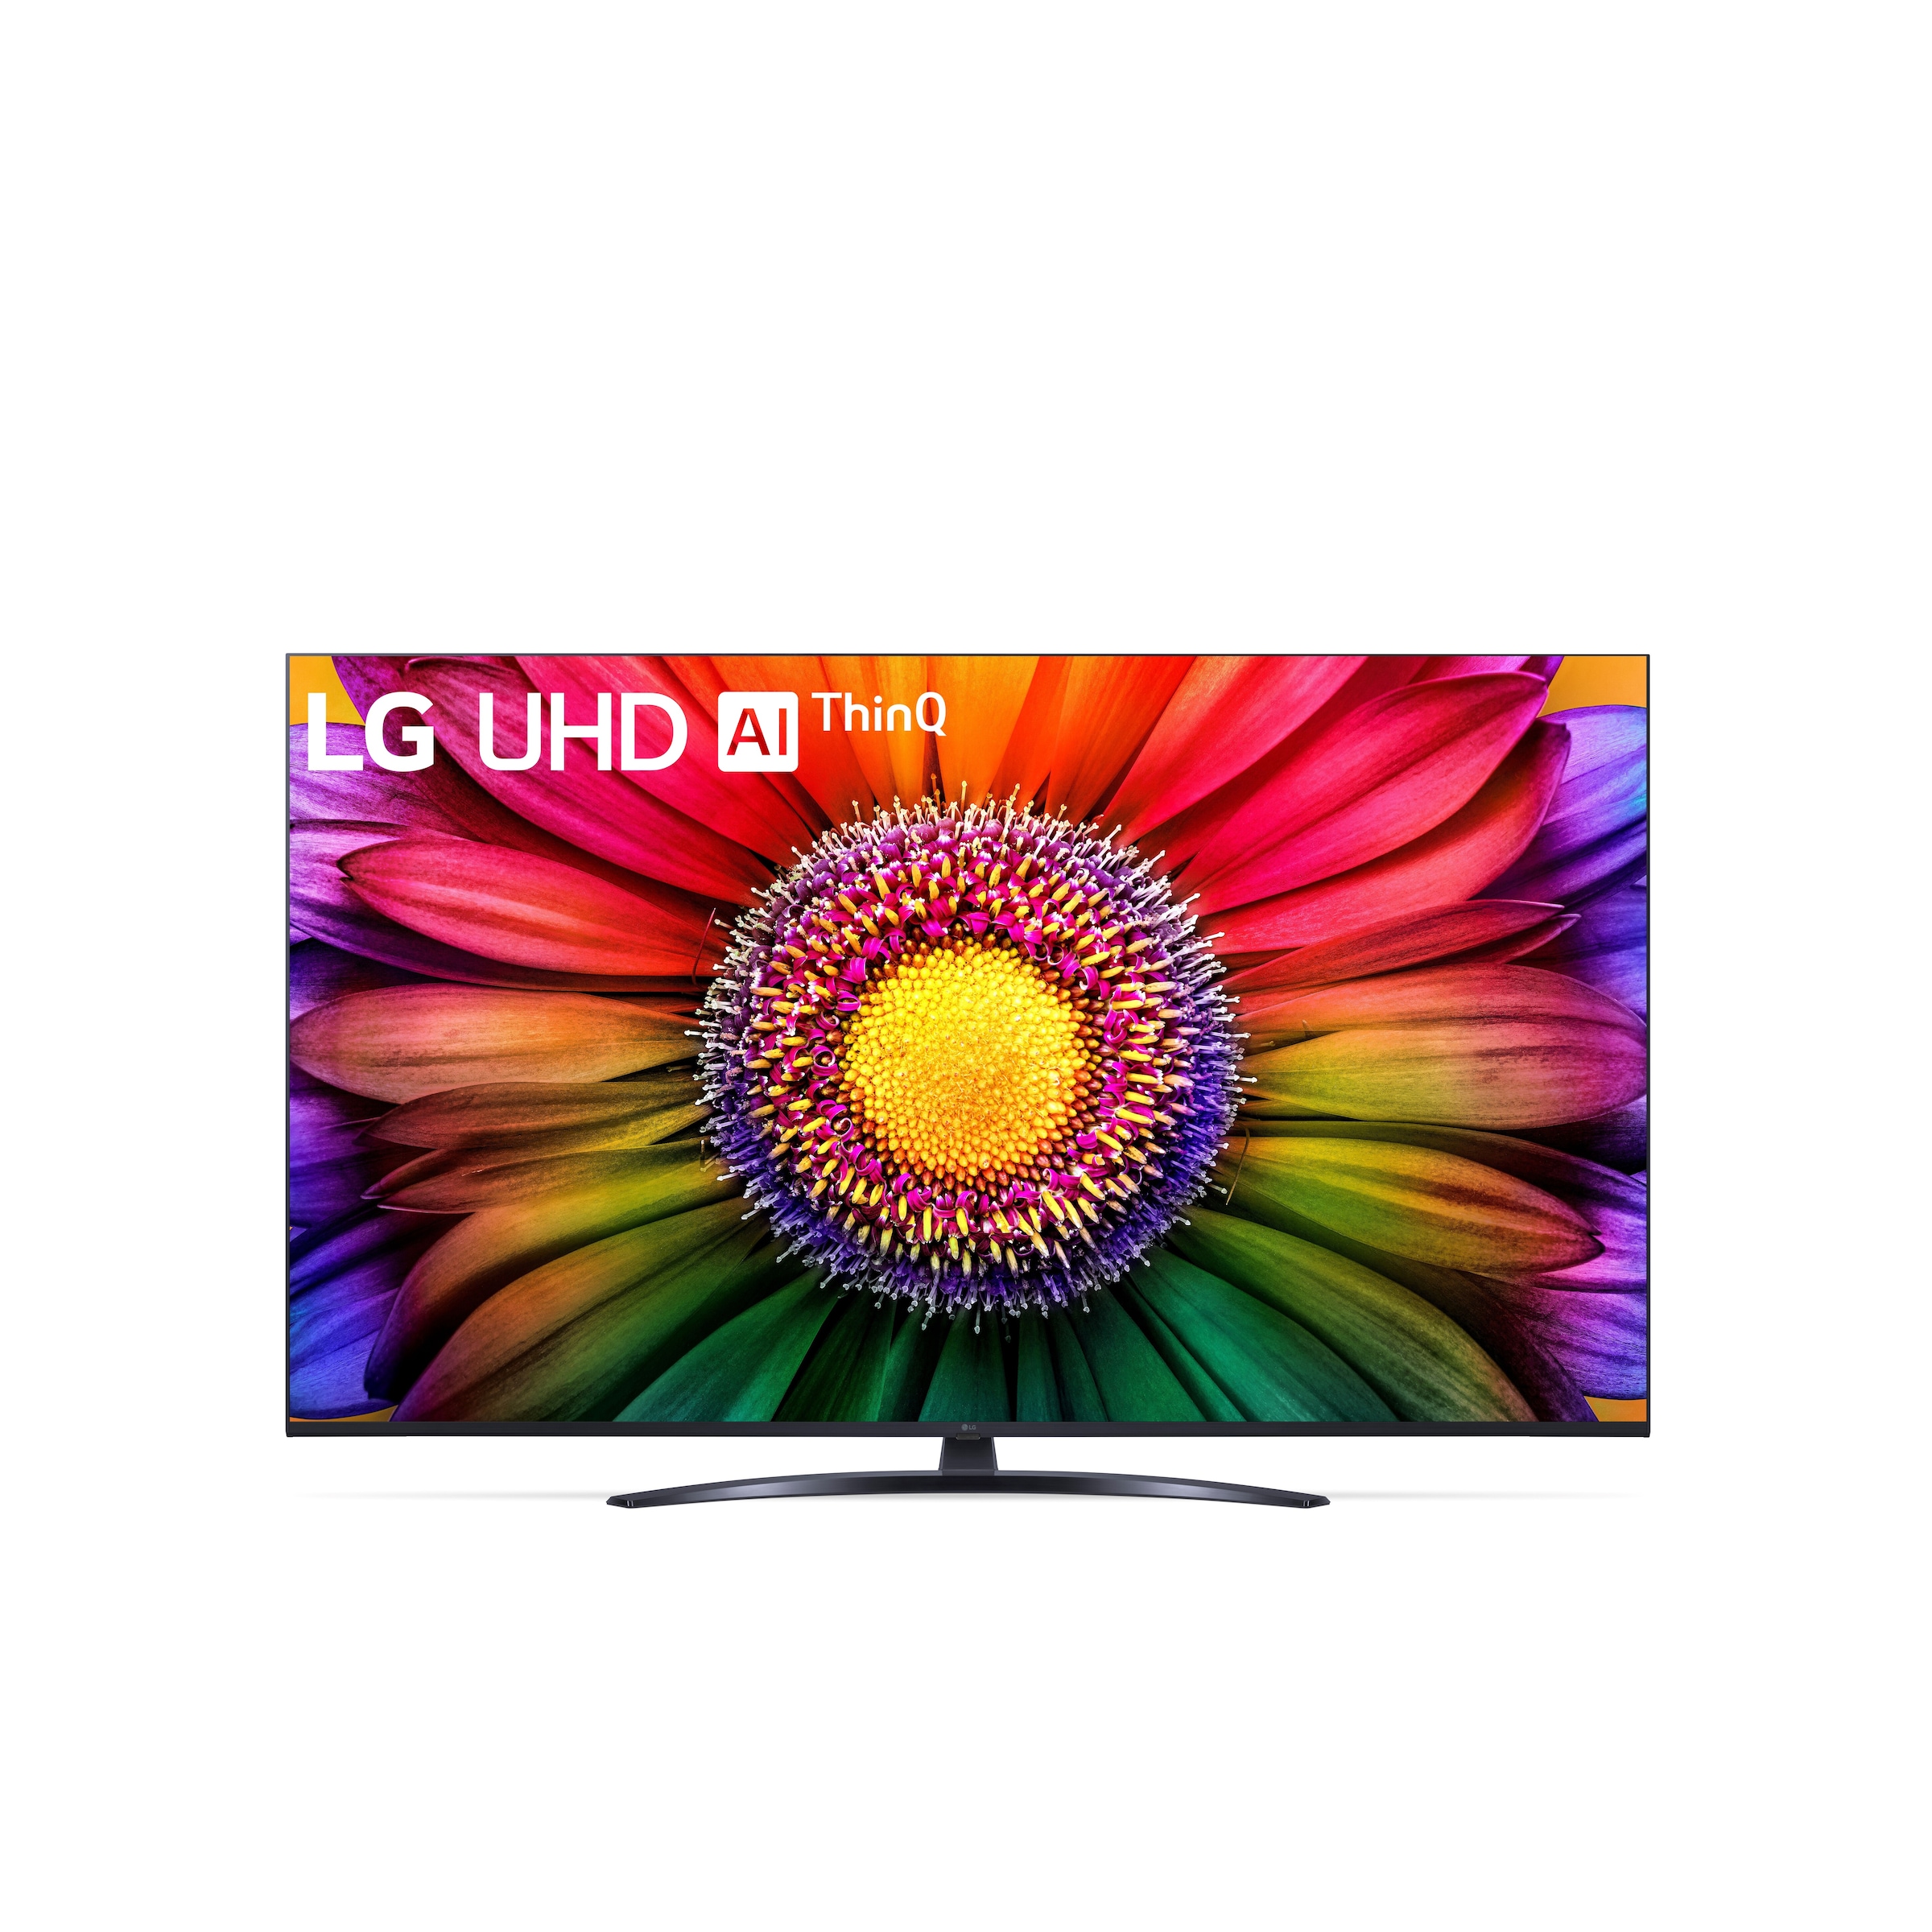 LCD-LED Fernseher »LG UHD AI ThinQ«, 164 cm/65 Zoll